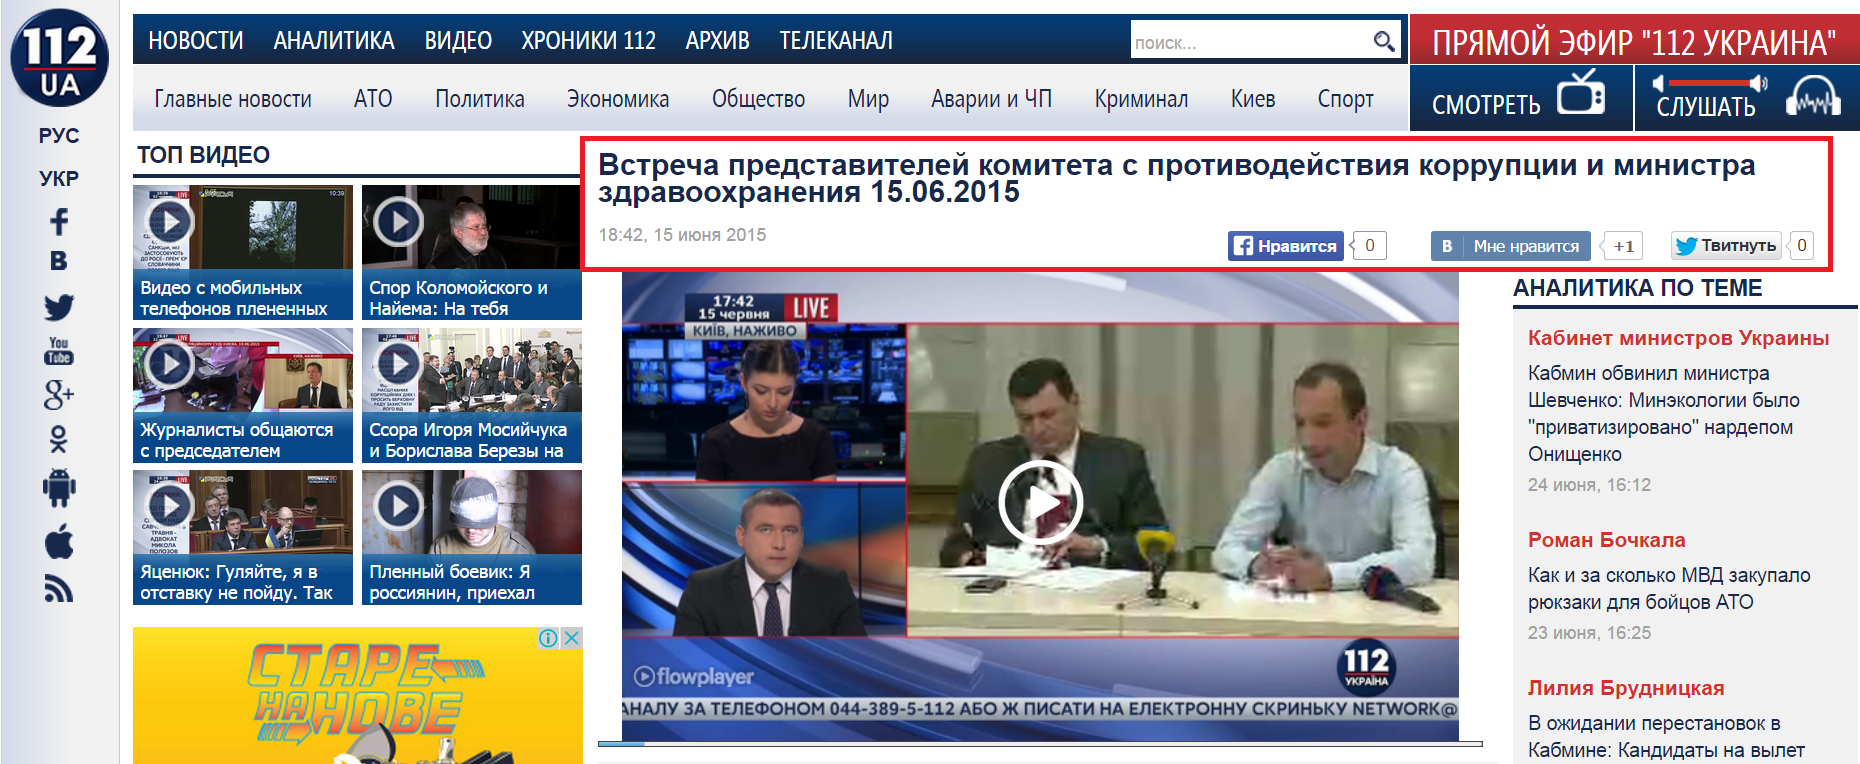 http://112.ua/video/vstrecha-predstaviteley-komiteta-s-protivodeystviya-korrupcii-i-ministra-zdravoohraneniya-15062015-162761.html